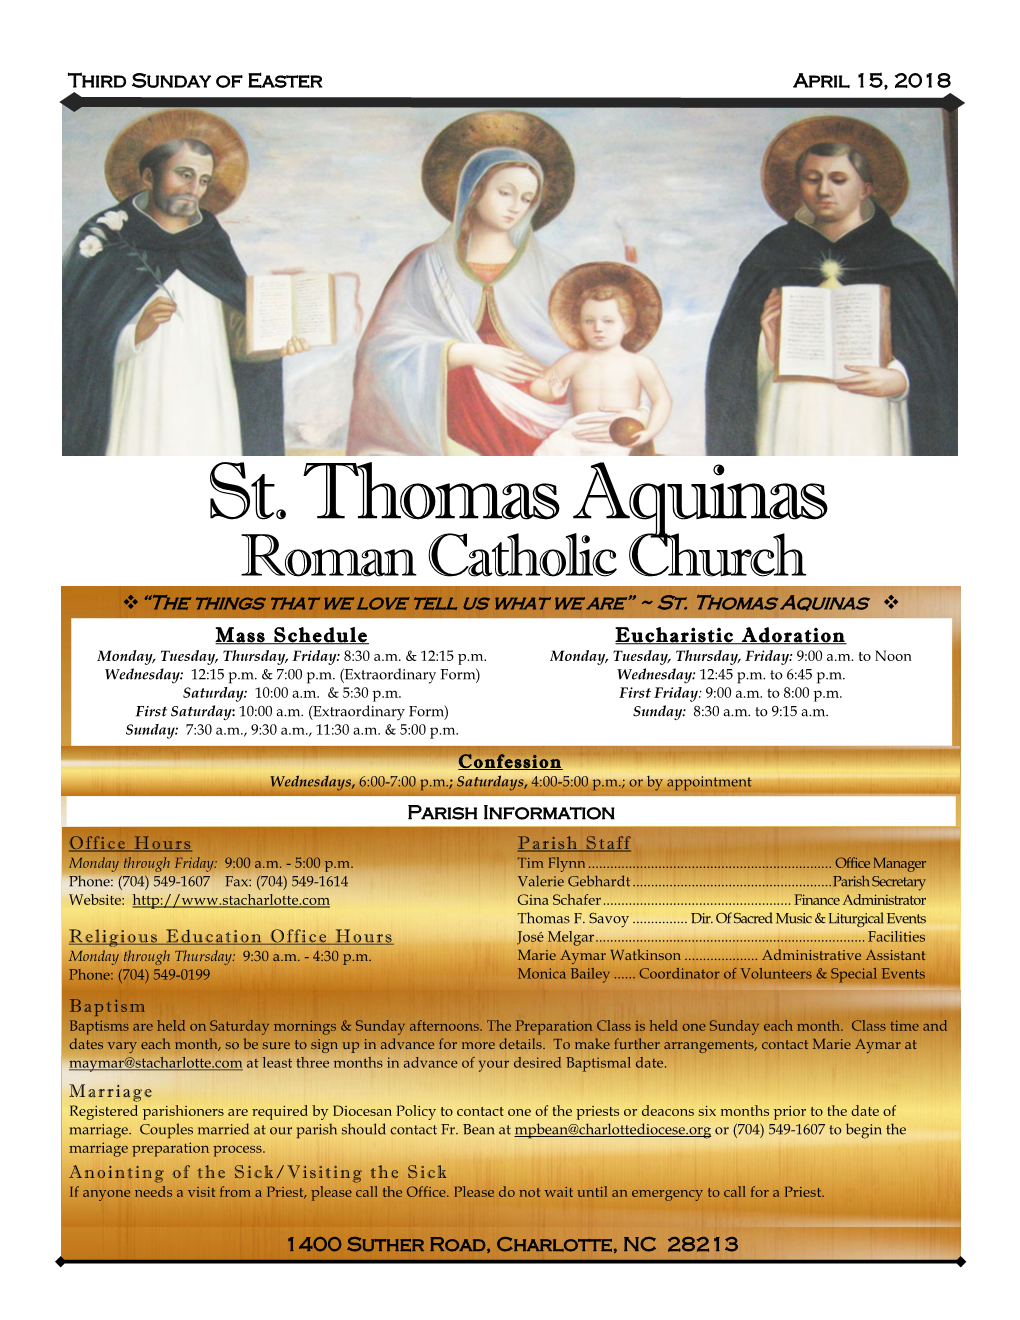 St. Thomas Aquinas Charlotte, NC